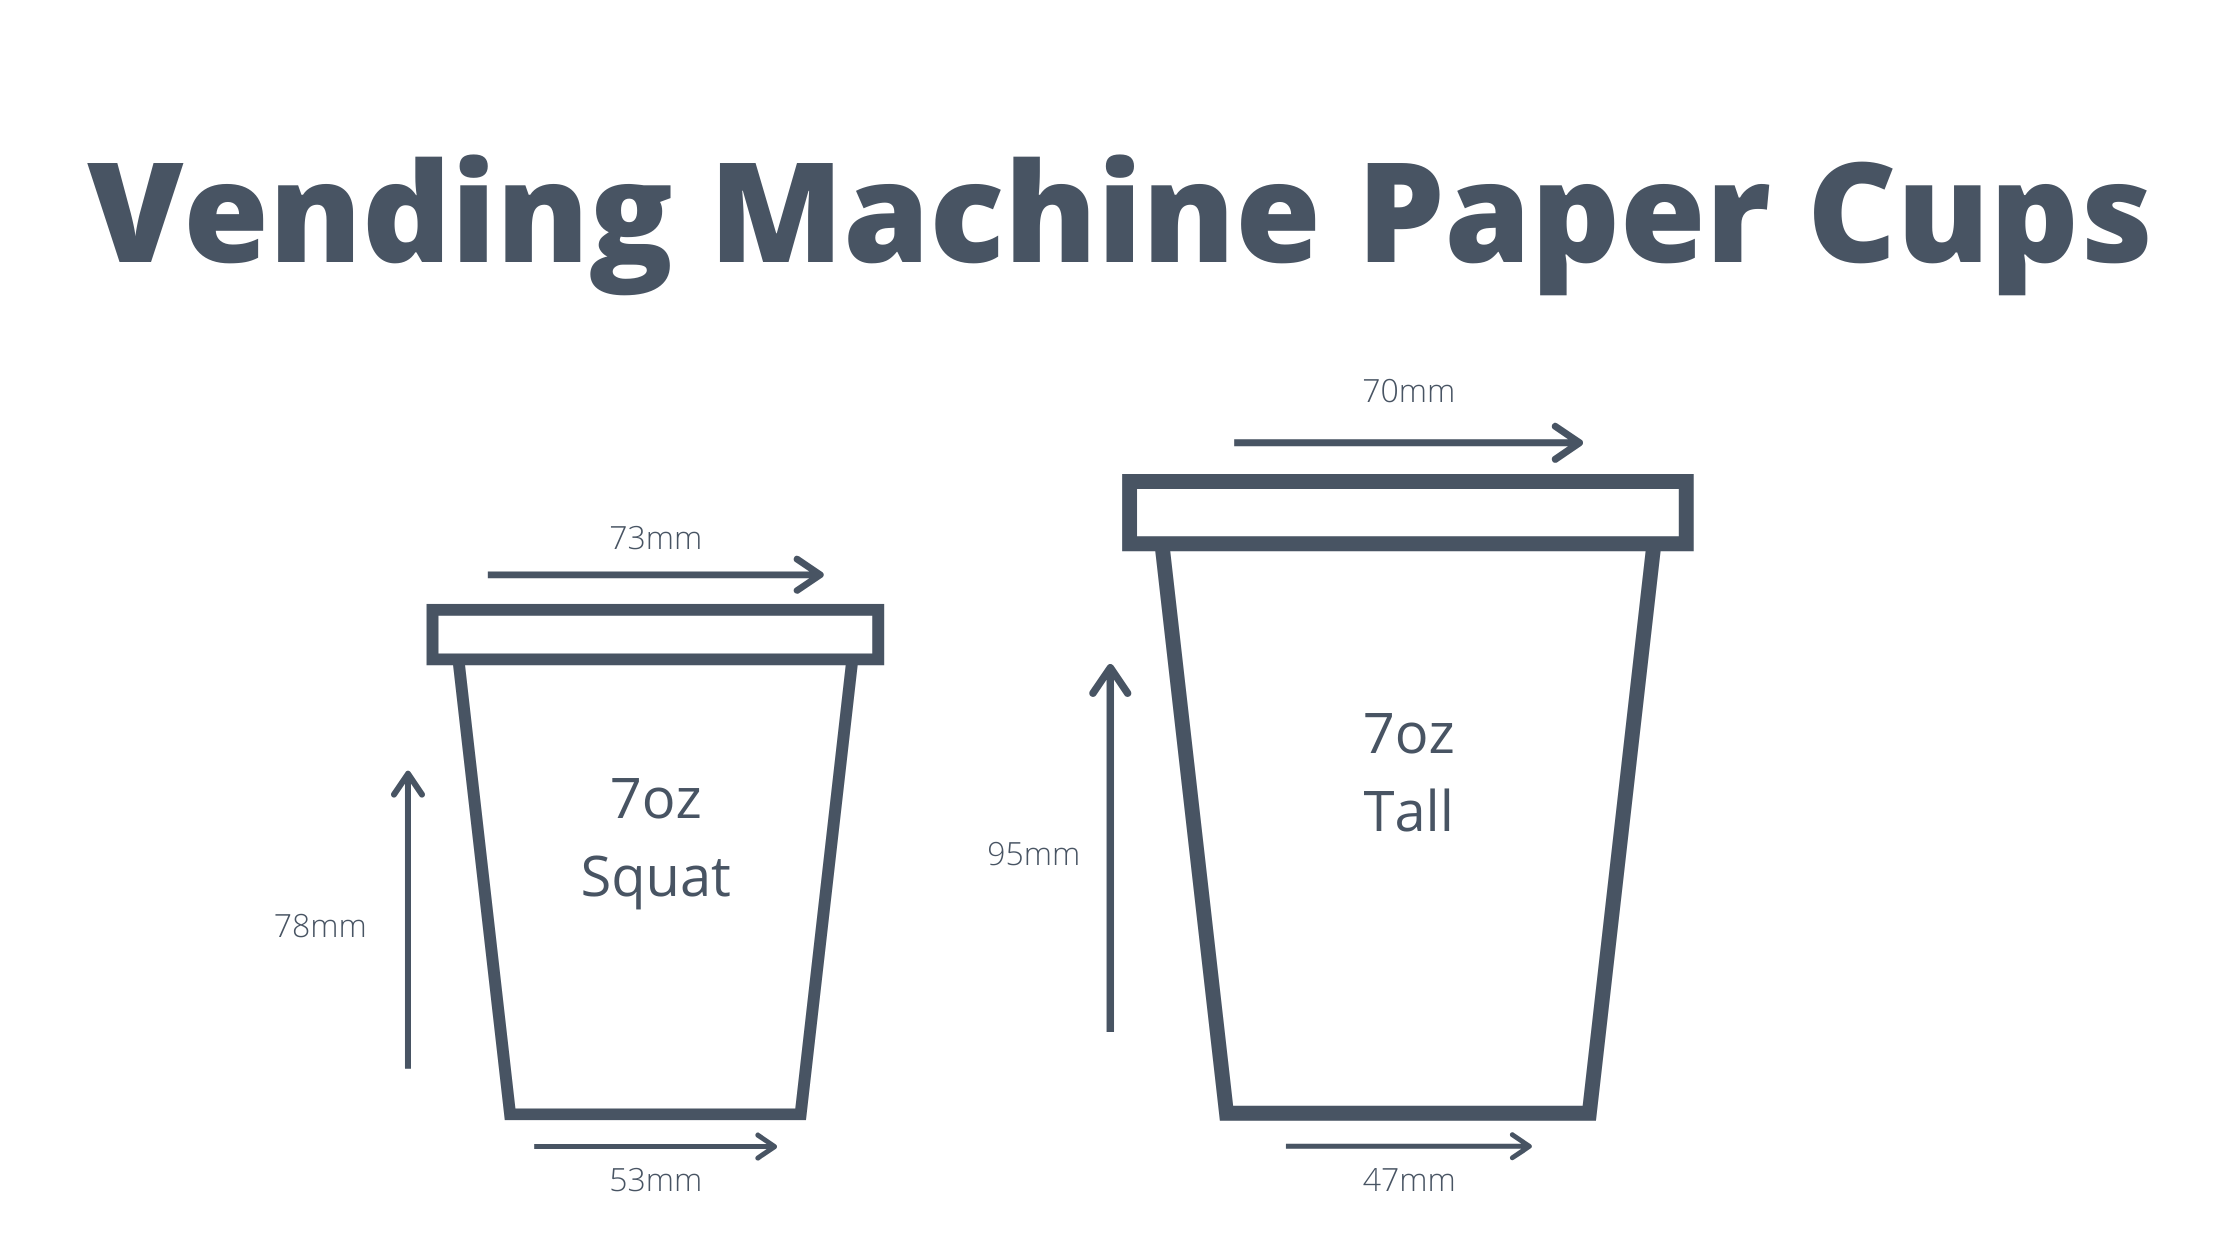 Vending Machine Paper Cups